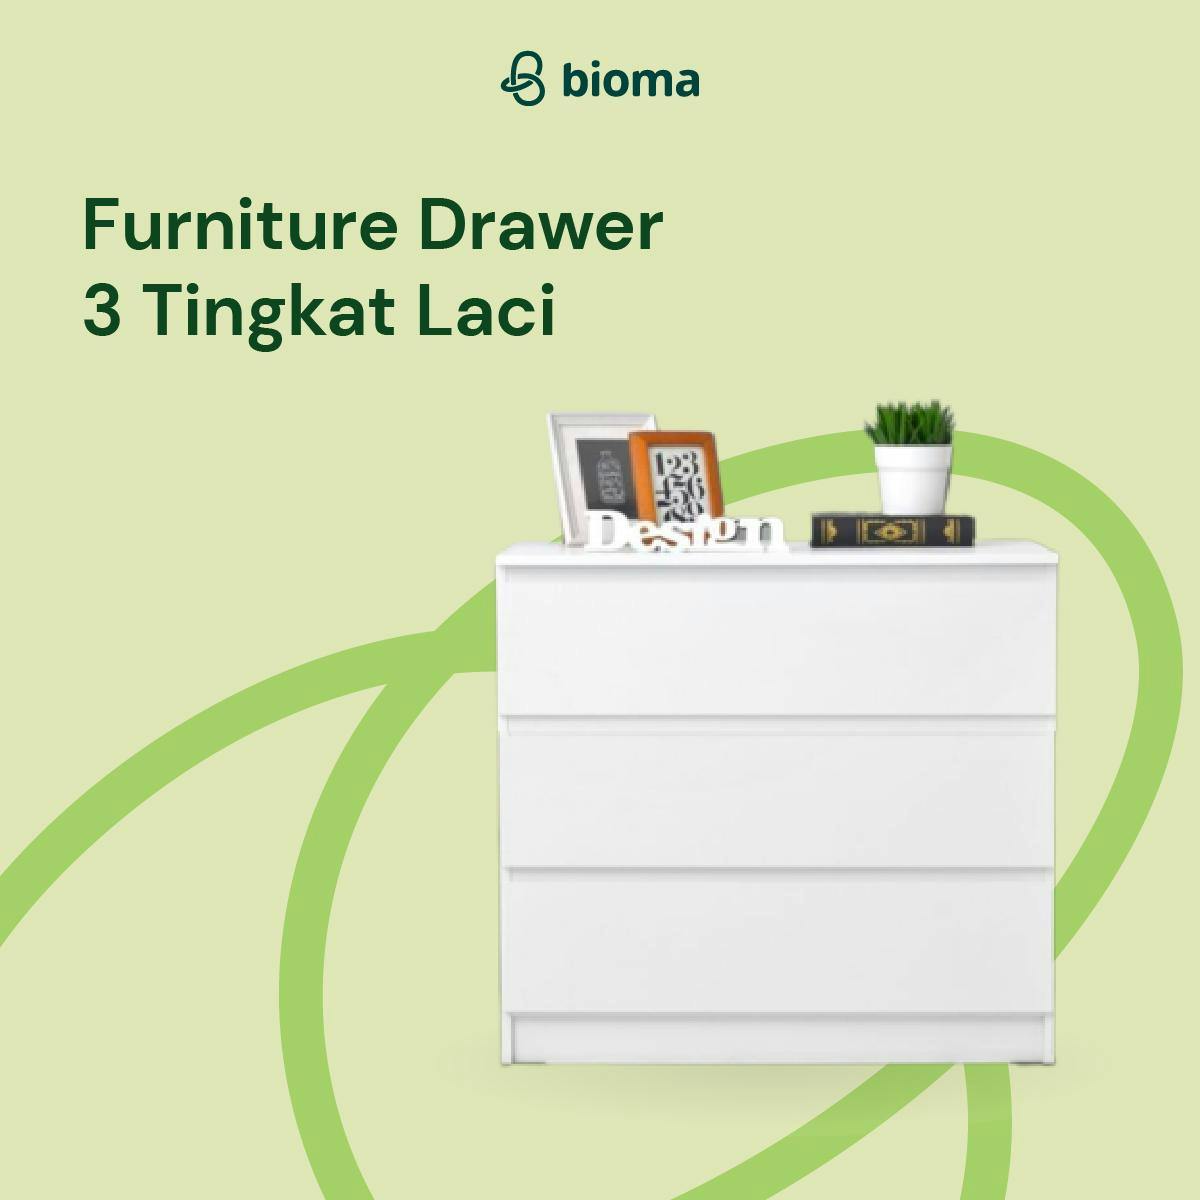 Furniture Drawer 3 Tingkat Laci